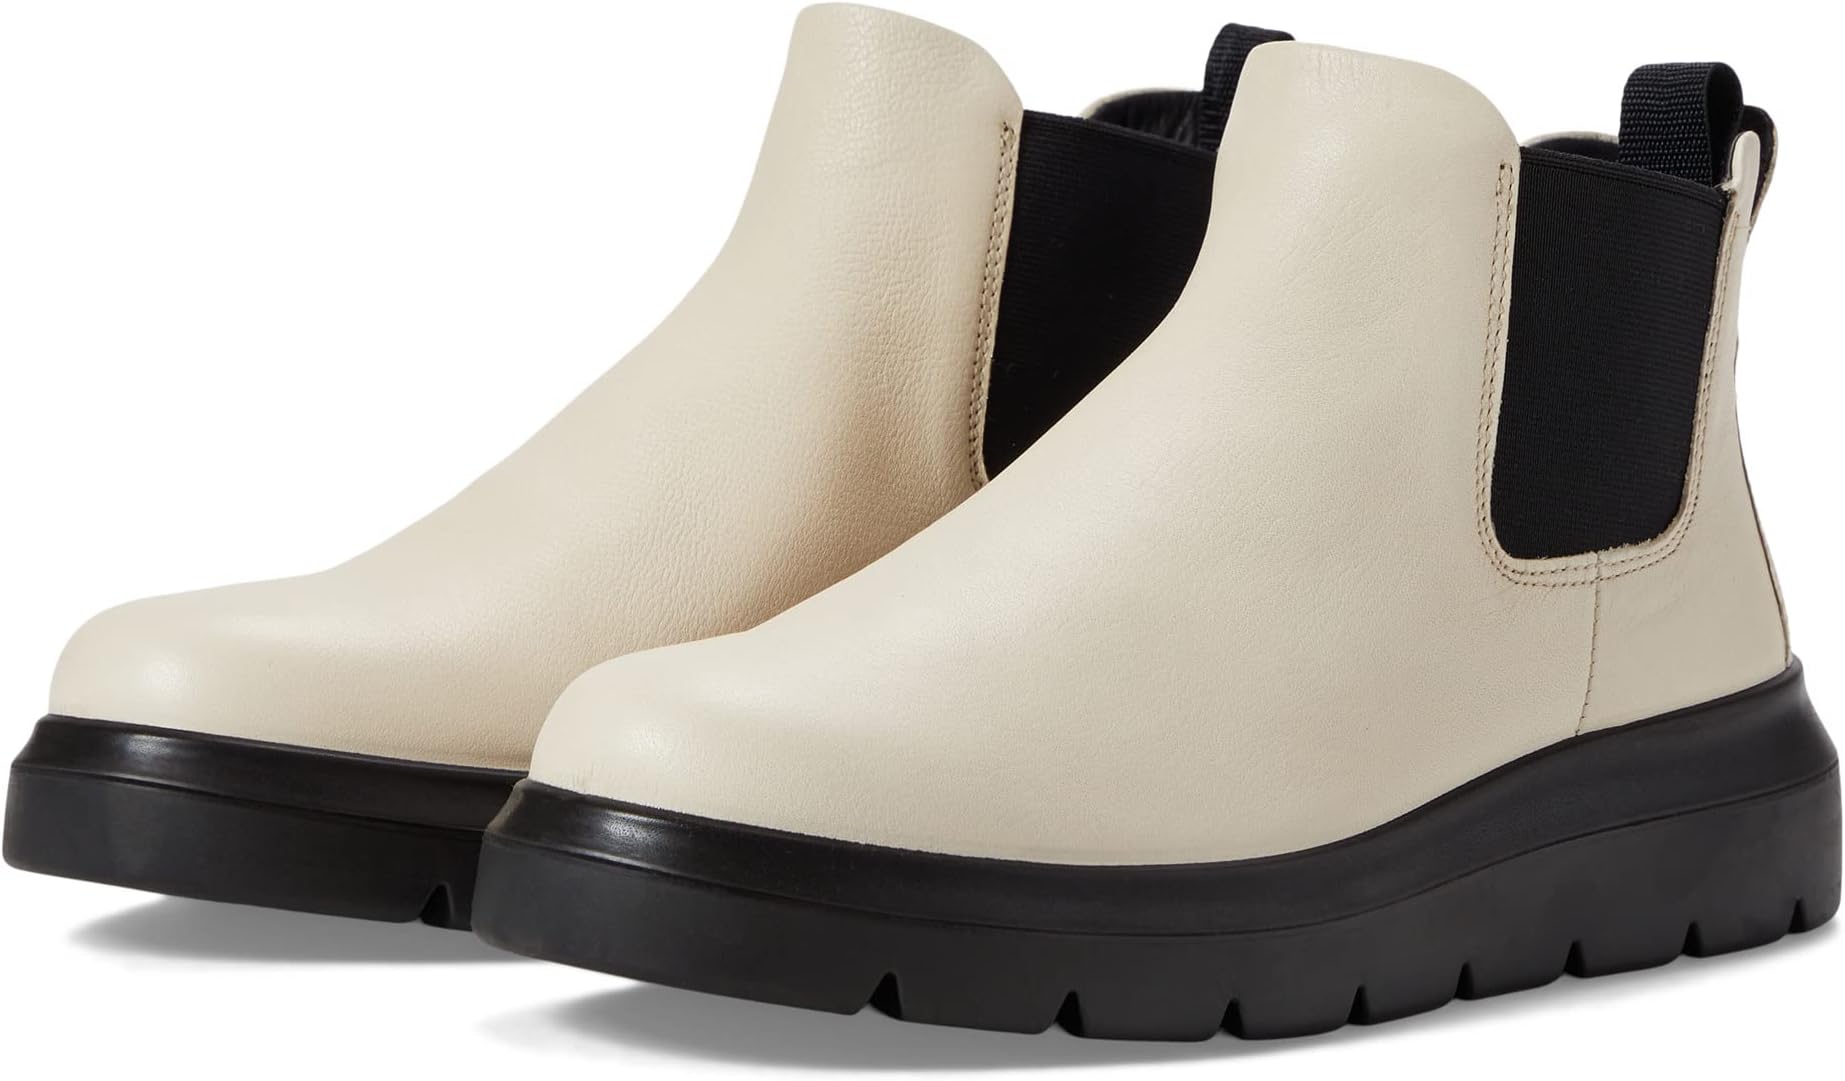 Ботинки Челси Nouvelle Hydromax Water-Resistant Chelsea Boot ECCO, цвет Limestone цена и фото